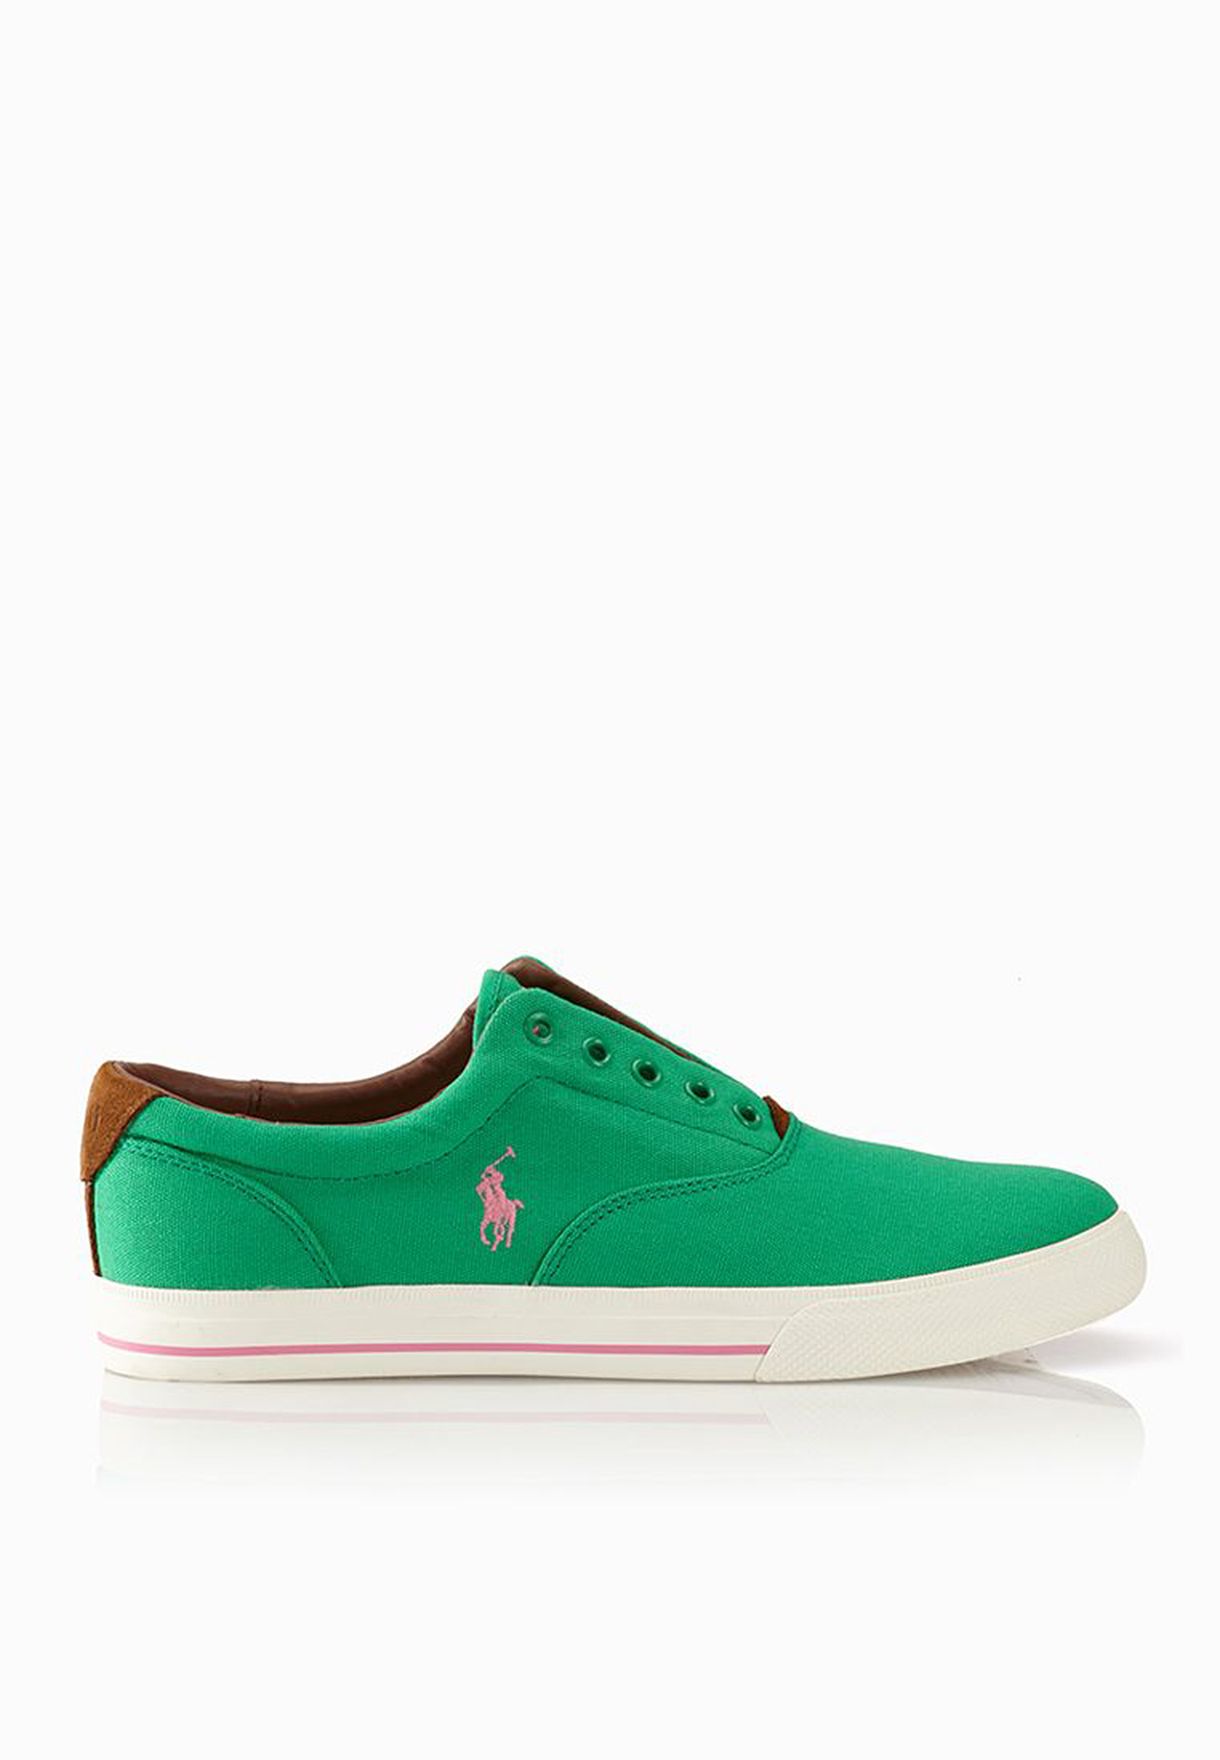 polo ralph lauren shoes green